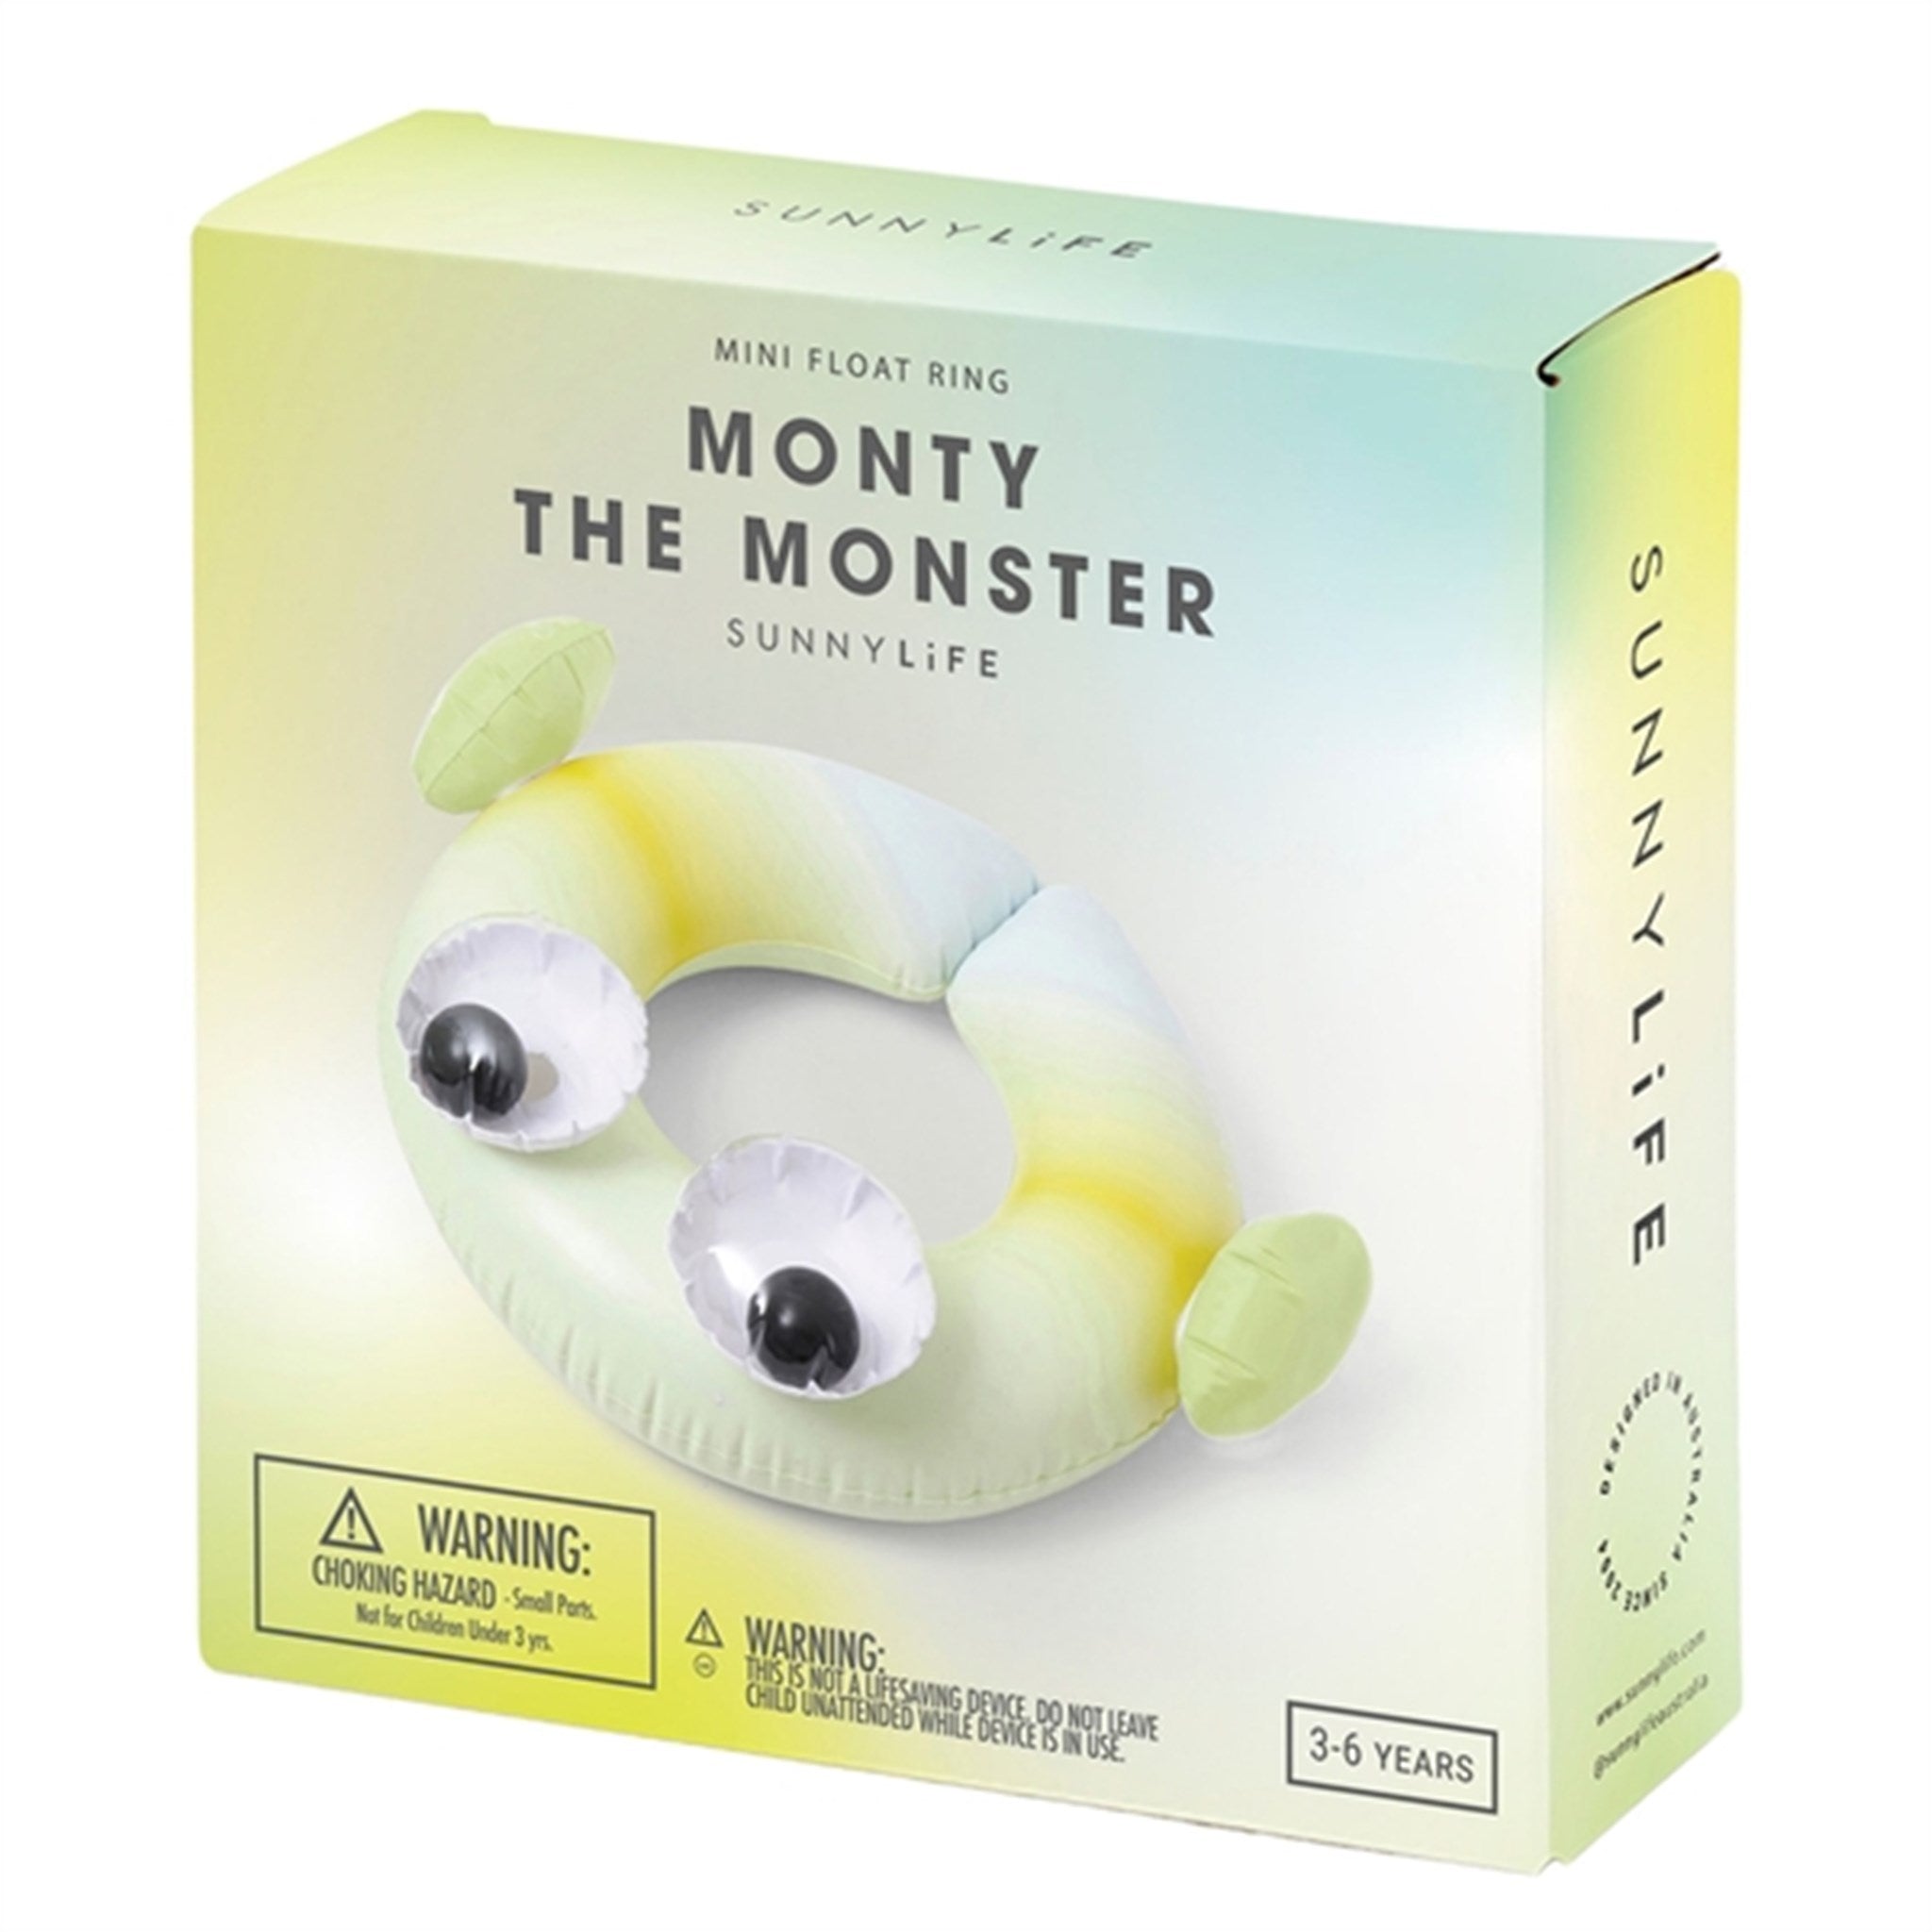 SunnyLife Mini Float Ring Monty the Monster 3